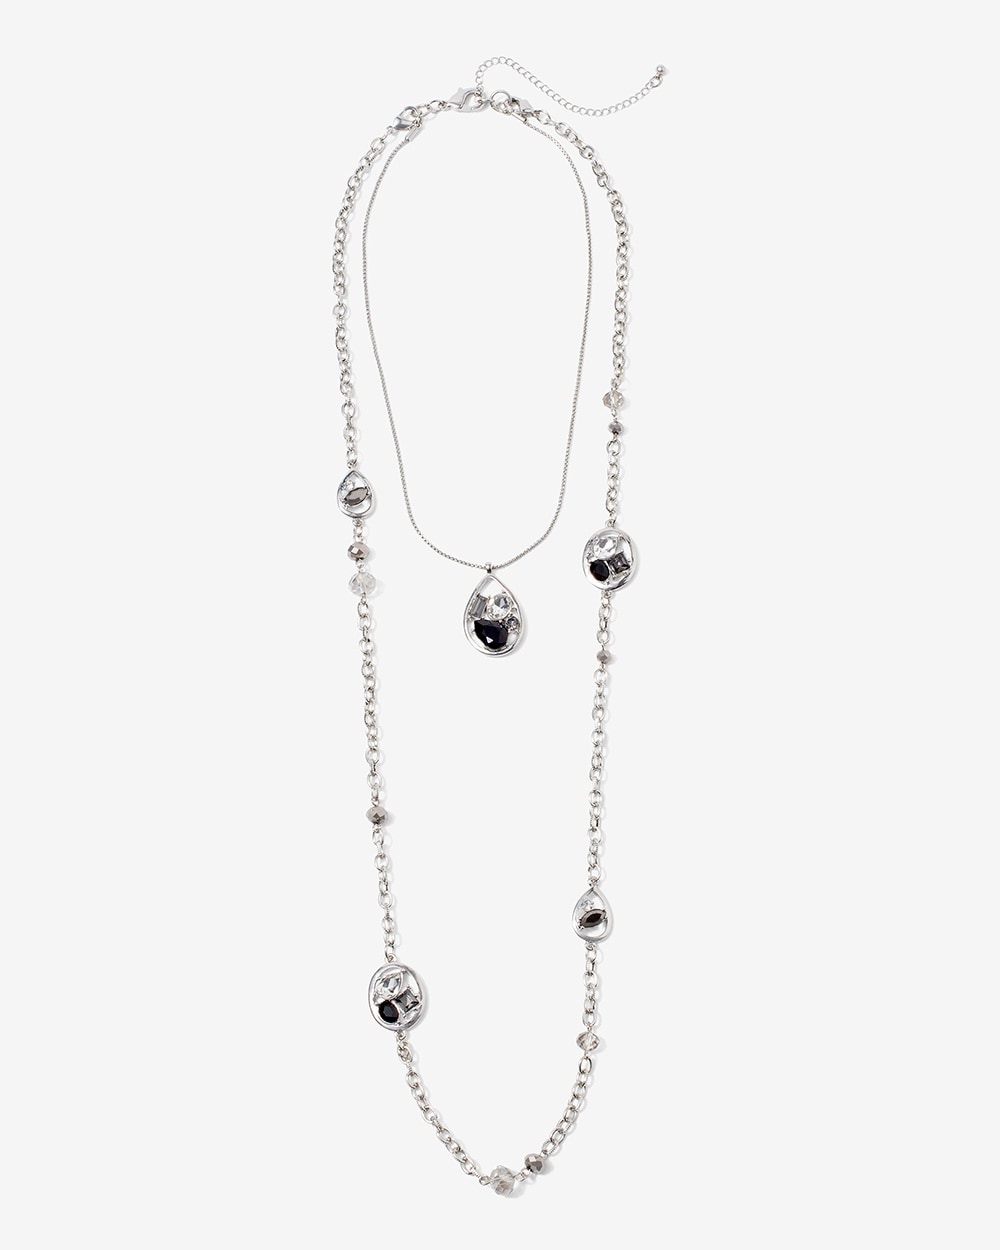 Multi-Wear Multi-Strand Chain Necklace